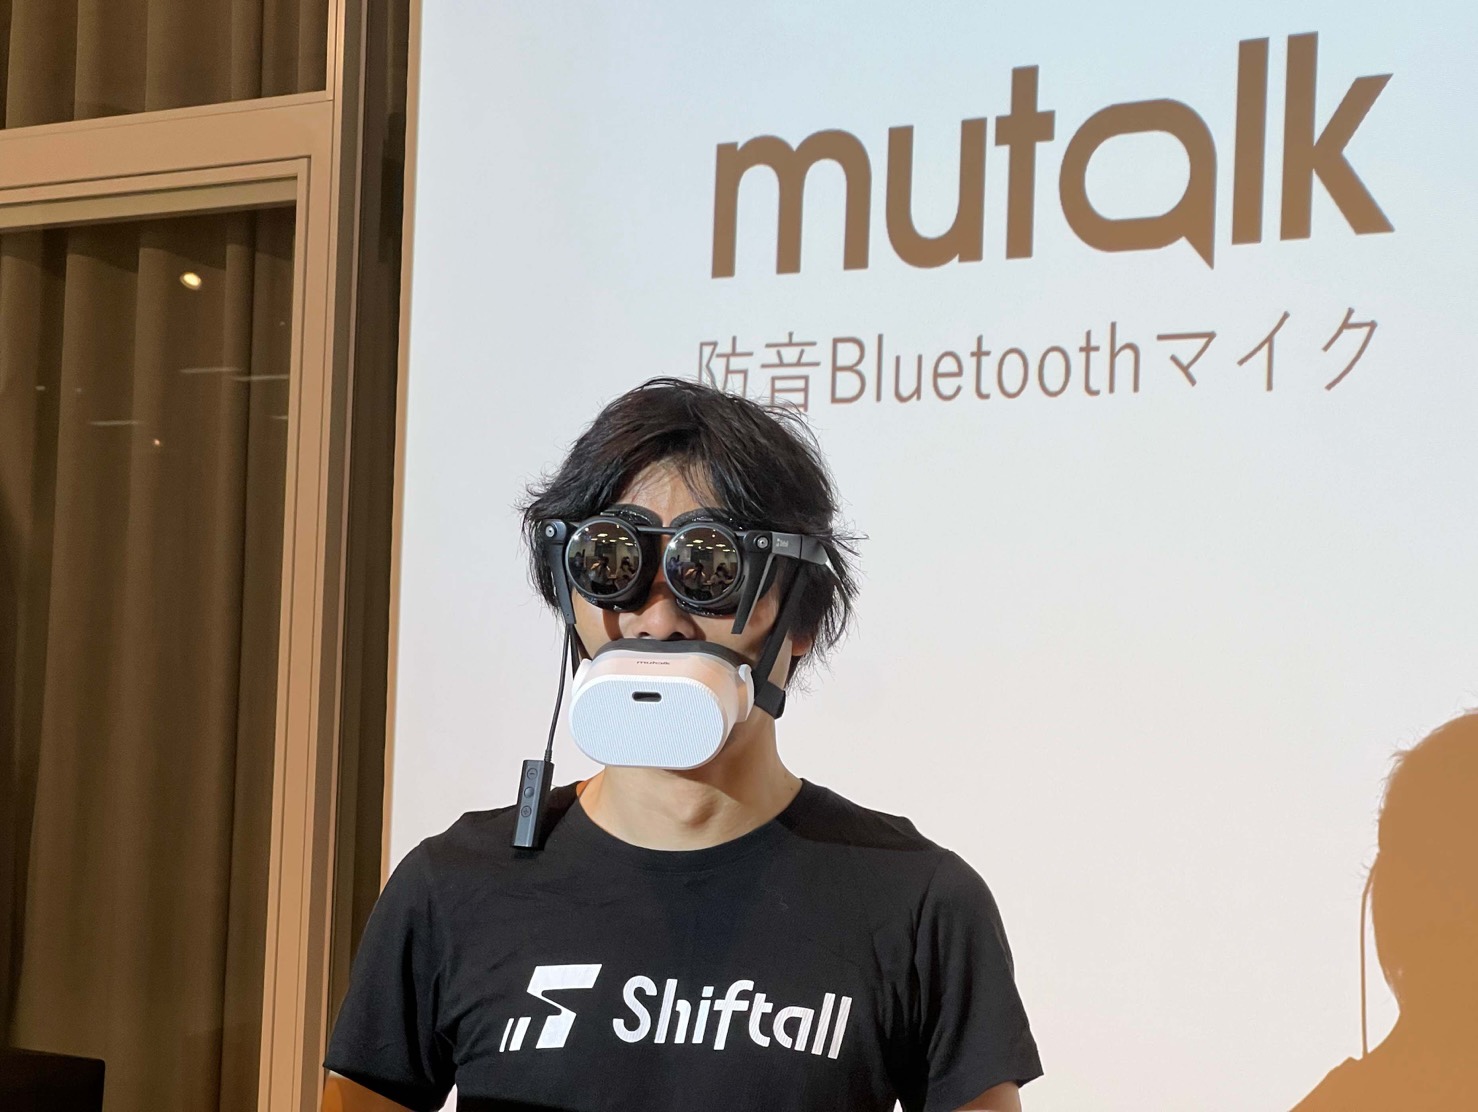 【超新作】 mutalk ミュートーク メタバース Bluetoothマイク sushitai.com.mx